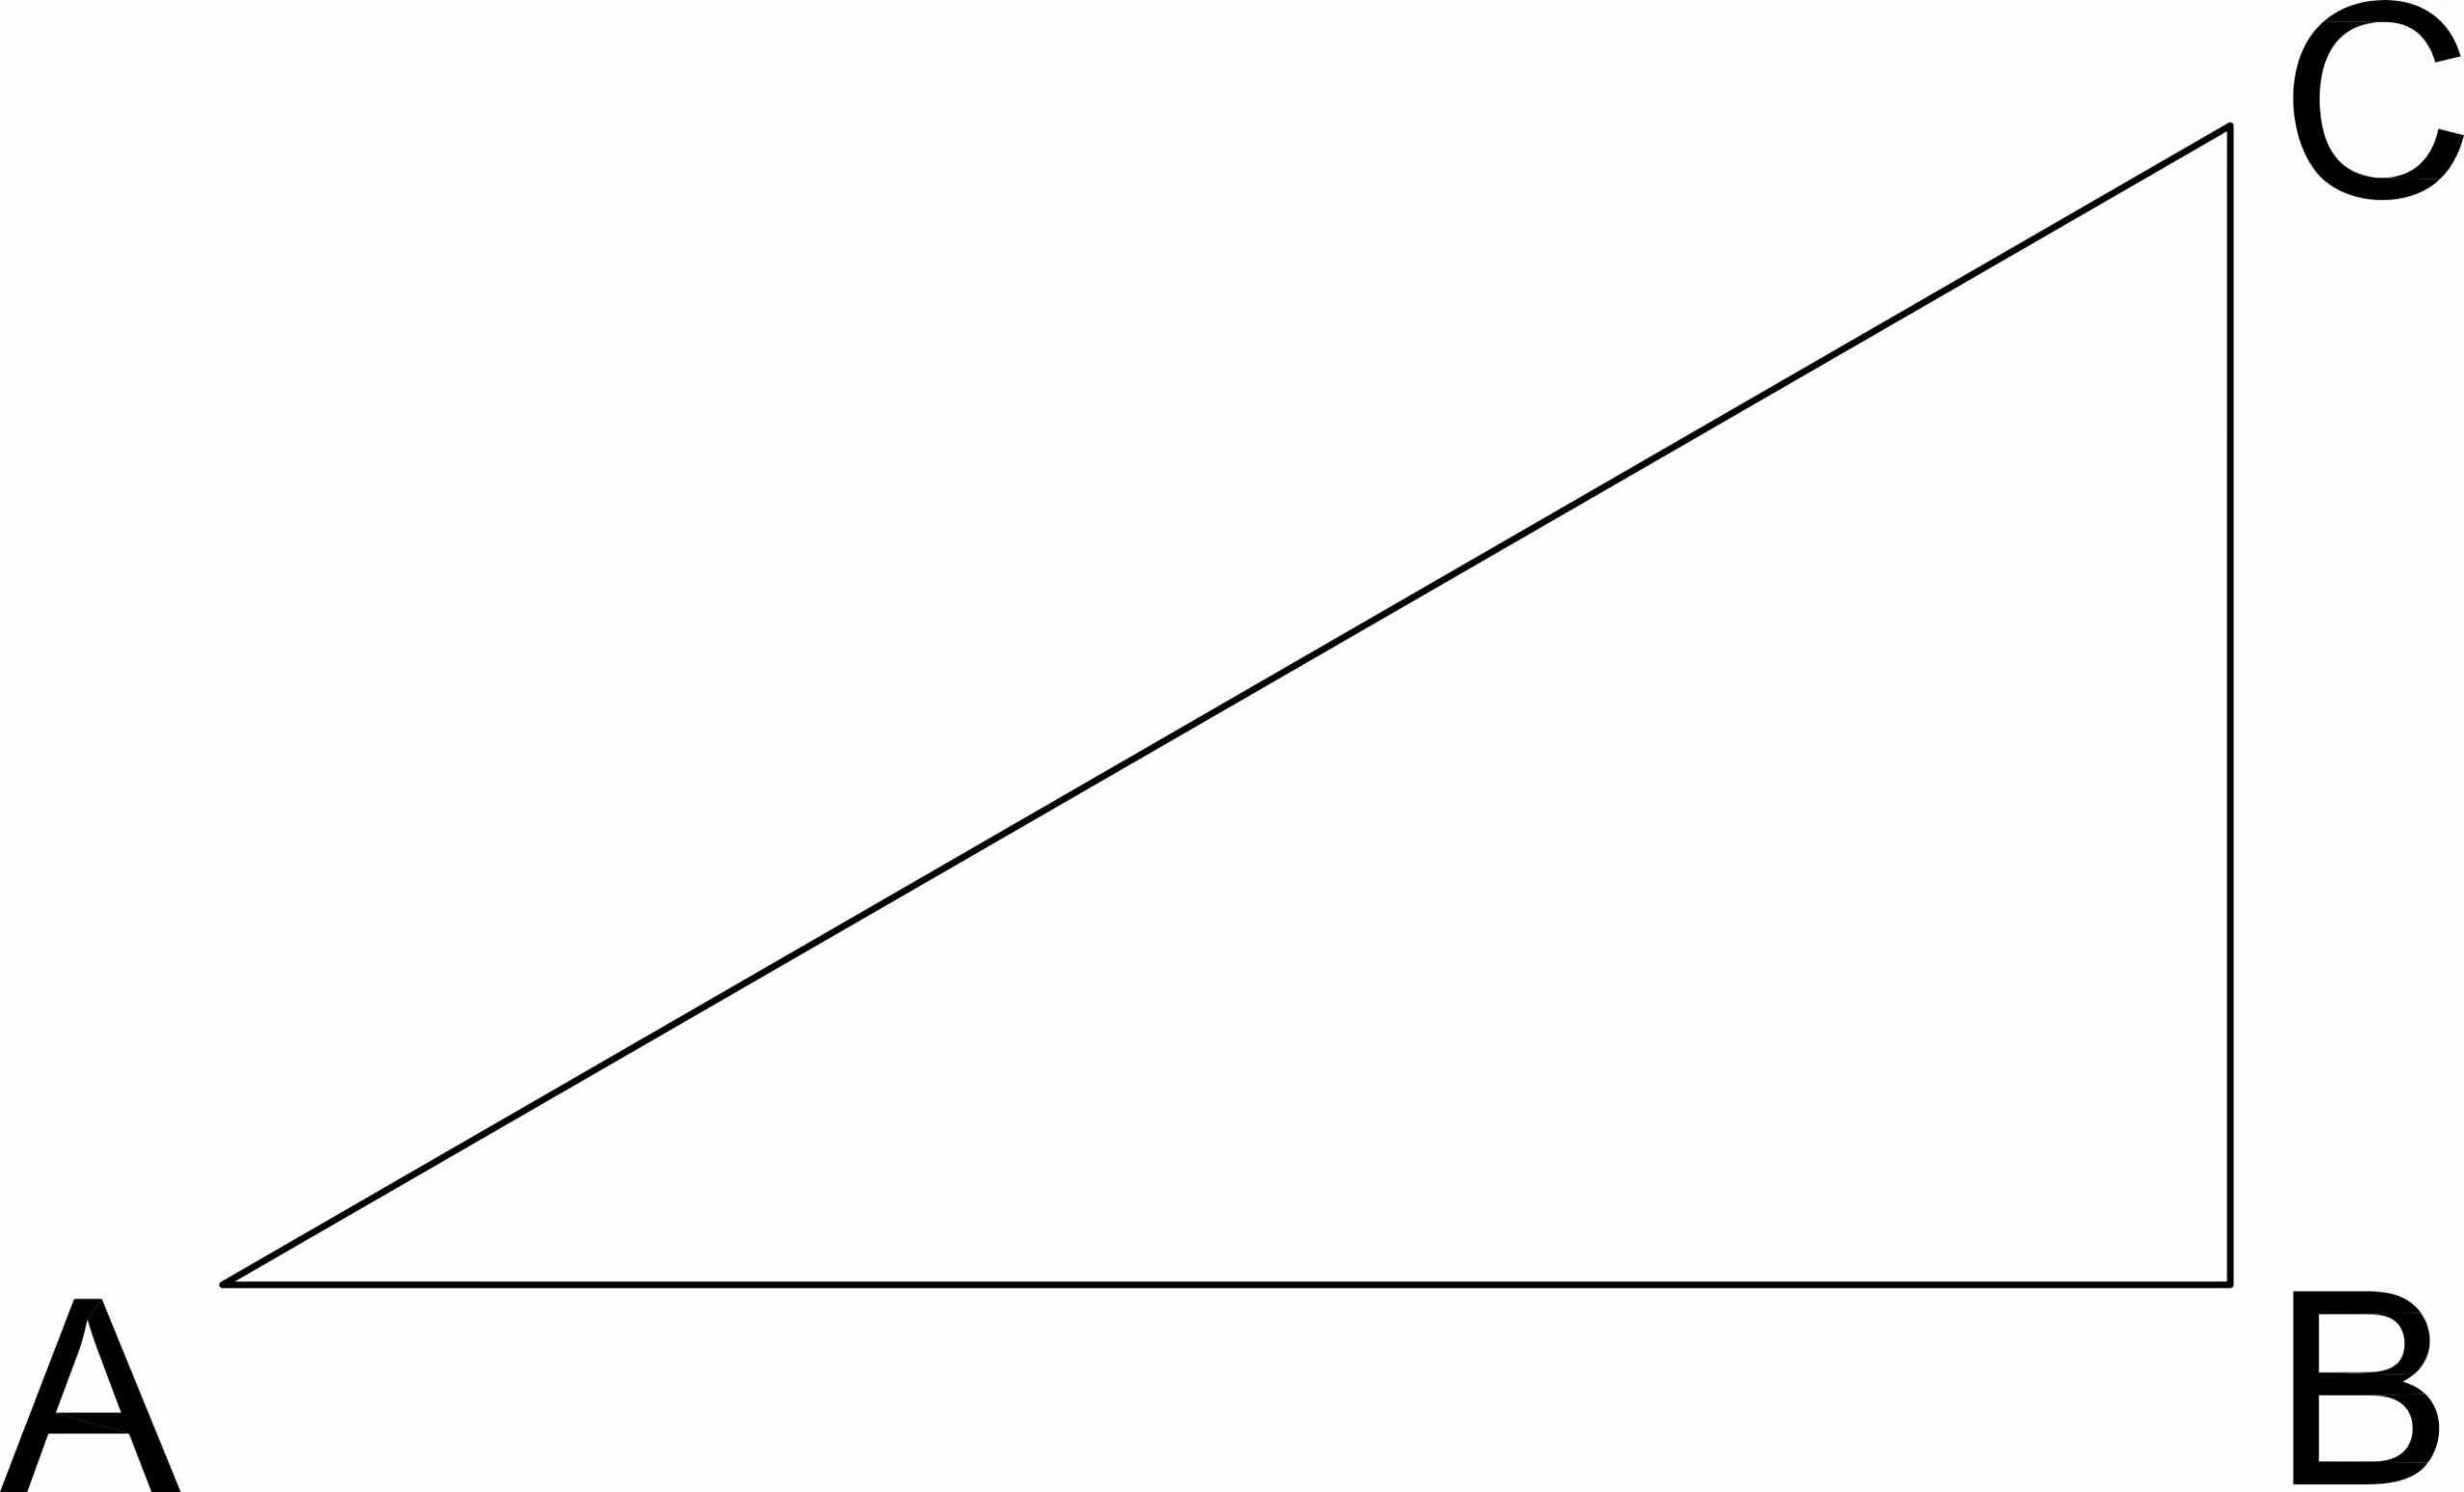 Прямоугольный треугольник изображен под буквой. Прямоугольный треугольник треугольники. Прямоугольный треугольник АВС. Прямоугольный триугольниктреугольник. Рисунок прямоугольного треугольника АВС.